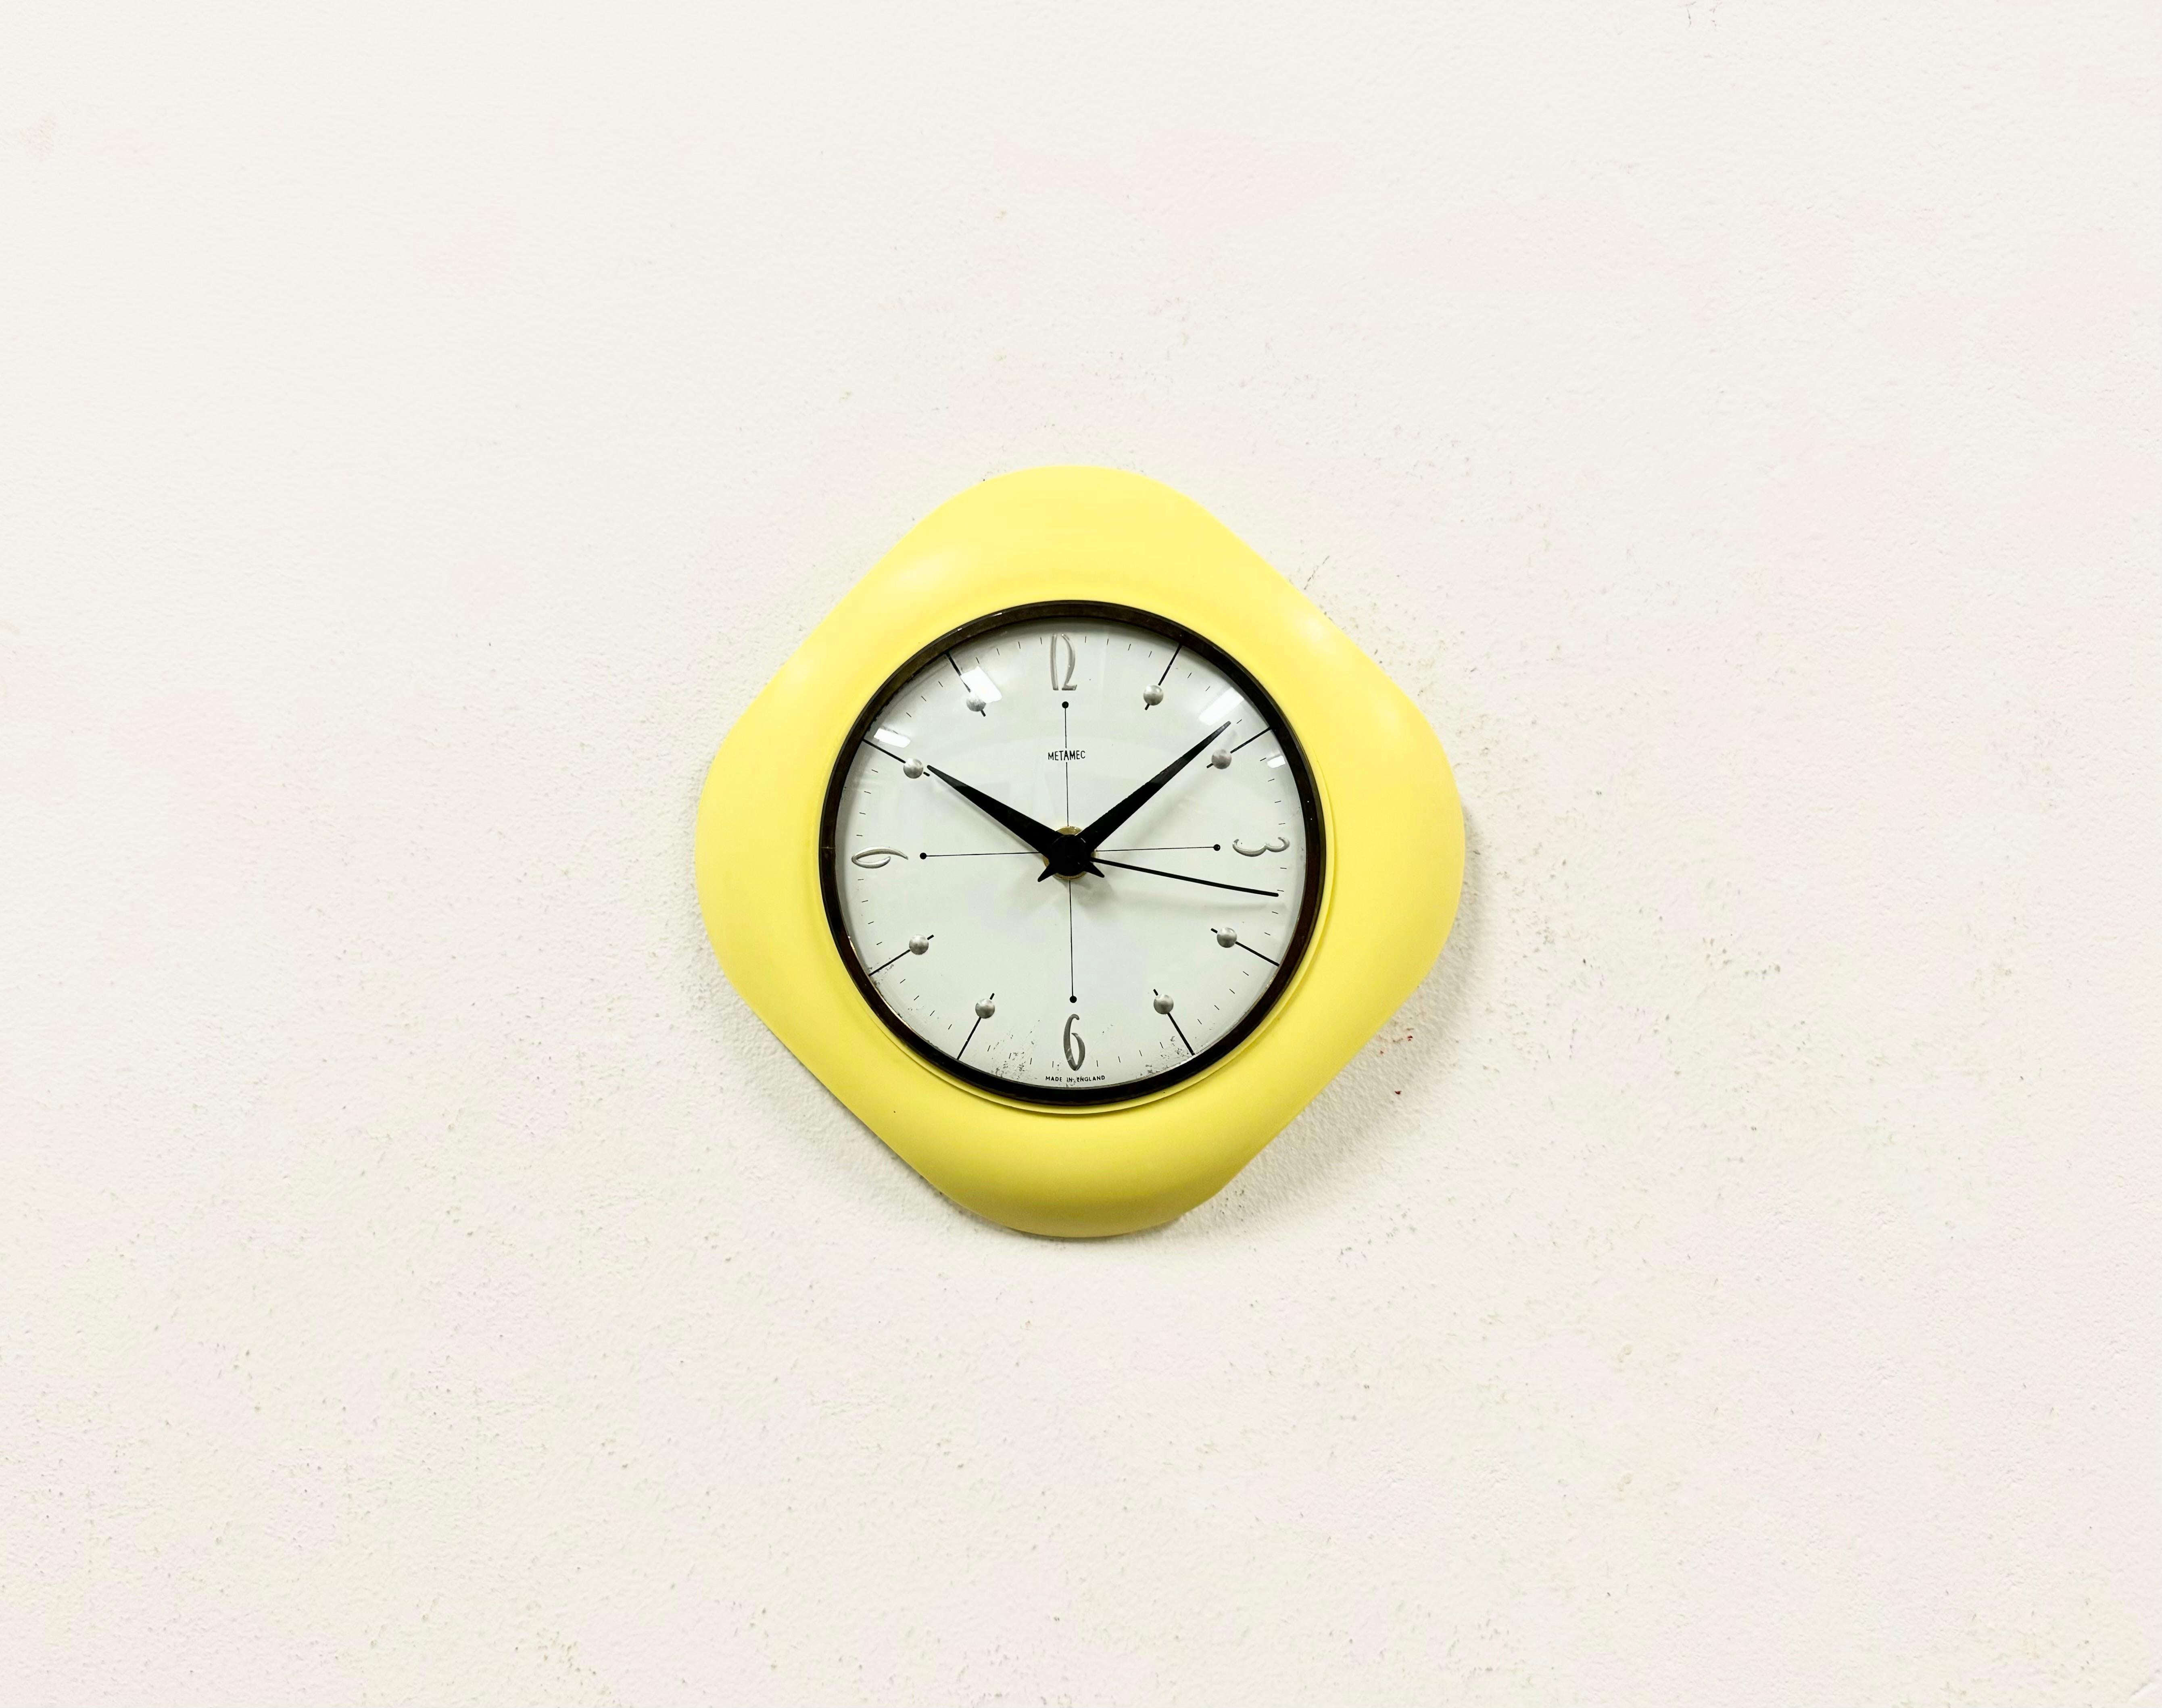 Metamec Wanduhr, hergestellt im Vereinigten Königreich in den 1970er Jahren. Sie hat einen gelben Bakelit-Körper und einen gewölbten klaren Deckel mit Messingring. Das Stück wurde in ein batteriebetriebenes Uhrwerk umgewandelt und benötigt nur eine